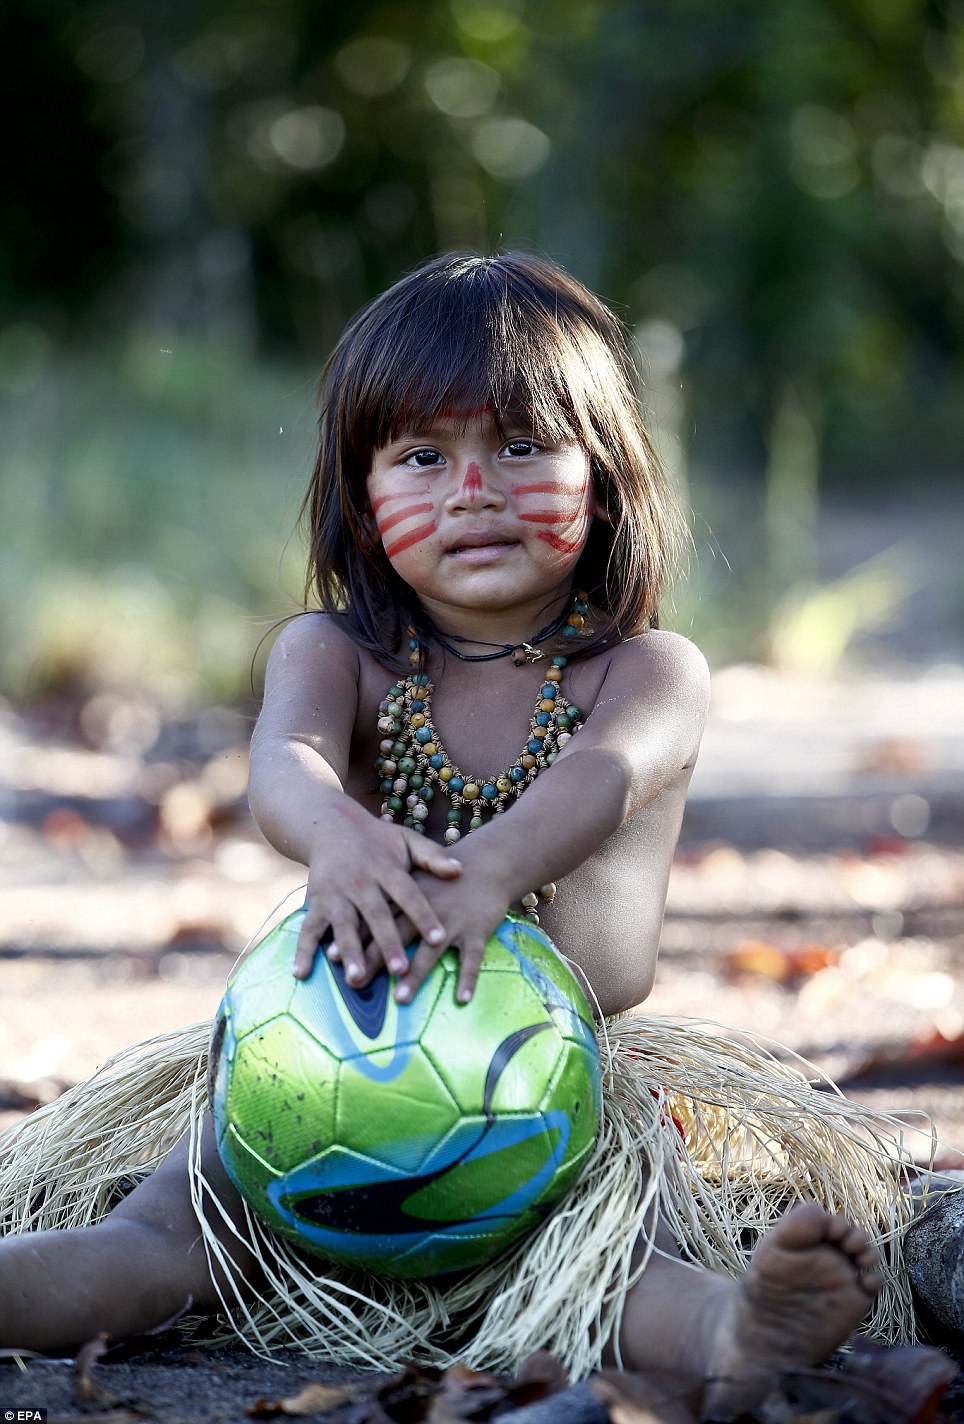 巴西原始部落酷爱足球 赤脚大秀球技